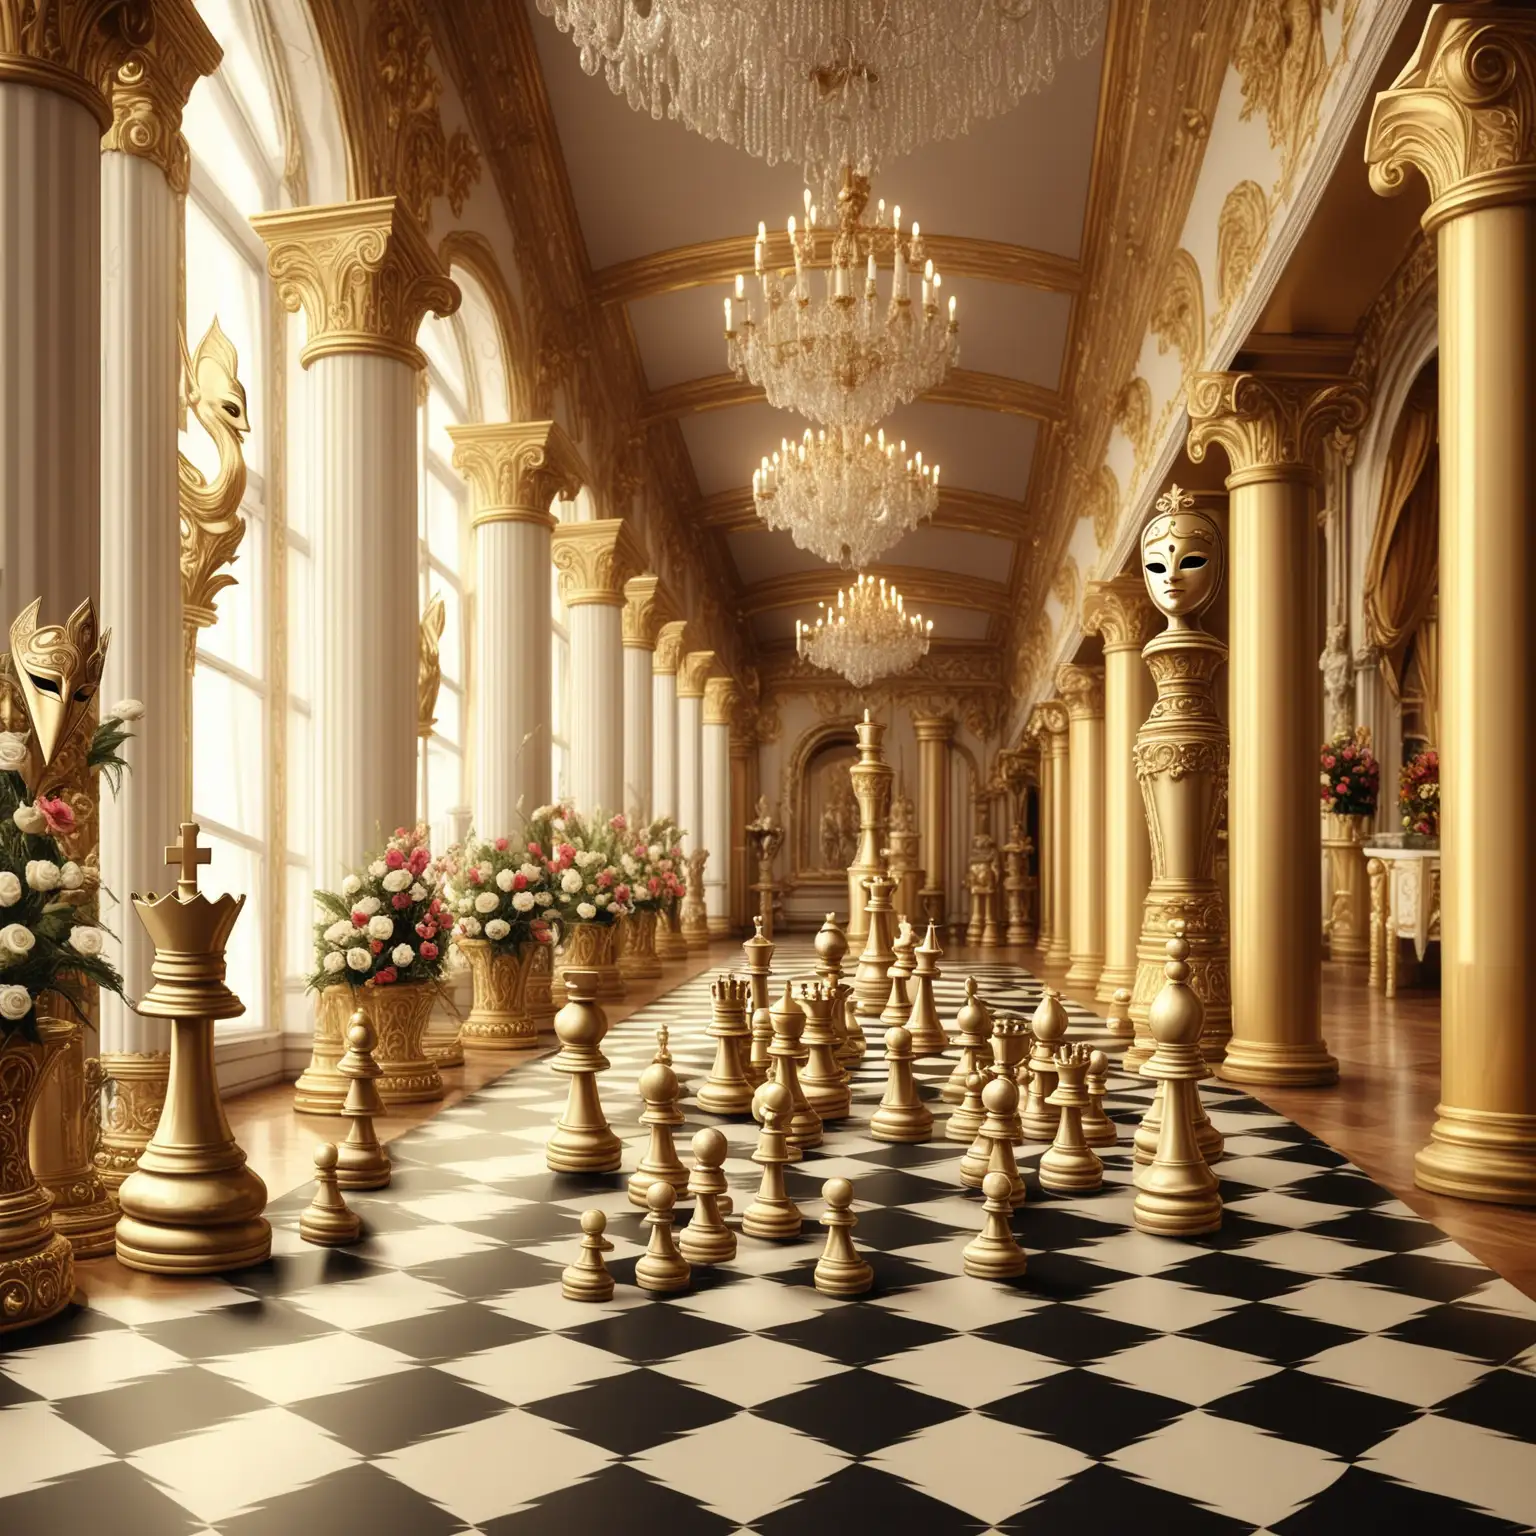 королевская золотая карнавальная маска и шахматы на фоне роскошного зала с колоннами, украшенного цветами